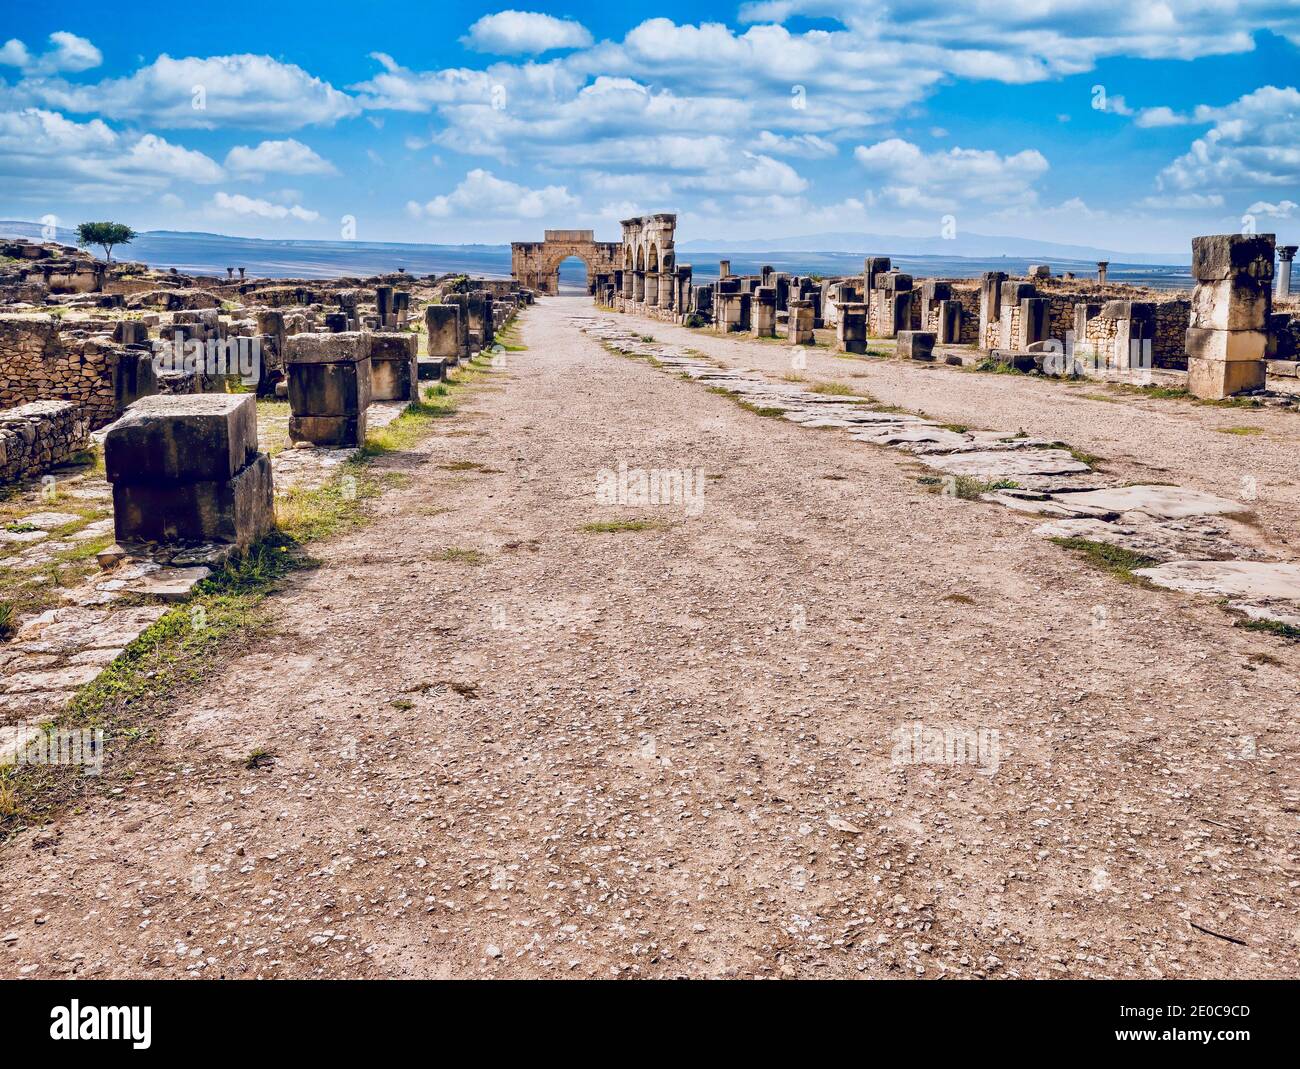 Eine Straße, die zu einem Triumphbogen aus dem 3. Jahrhundert führt, führt durch die Ruinen der antiken römischen Stadt Volubilis in Marokko. Stockfoto